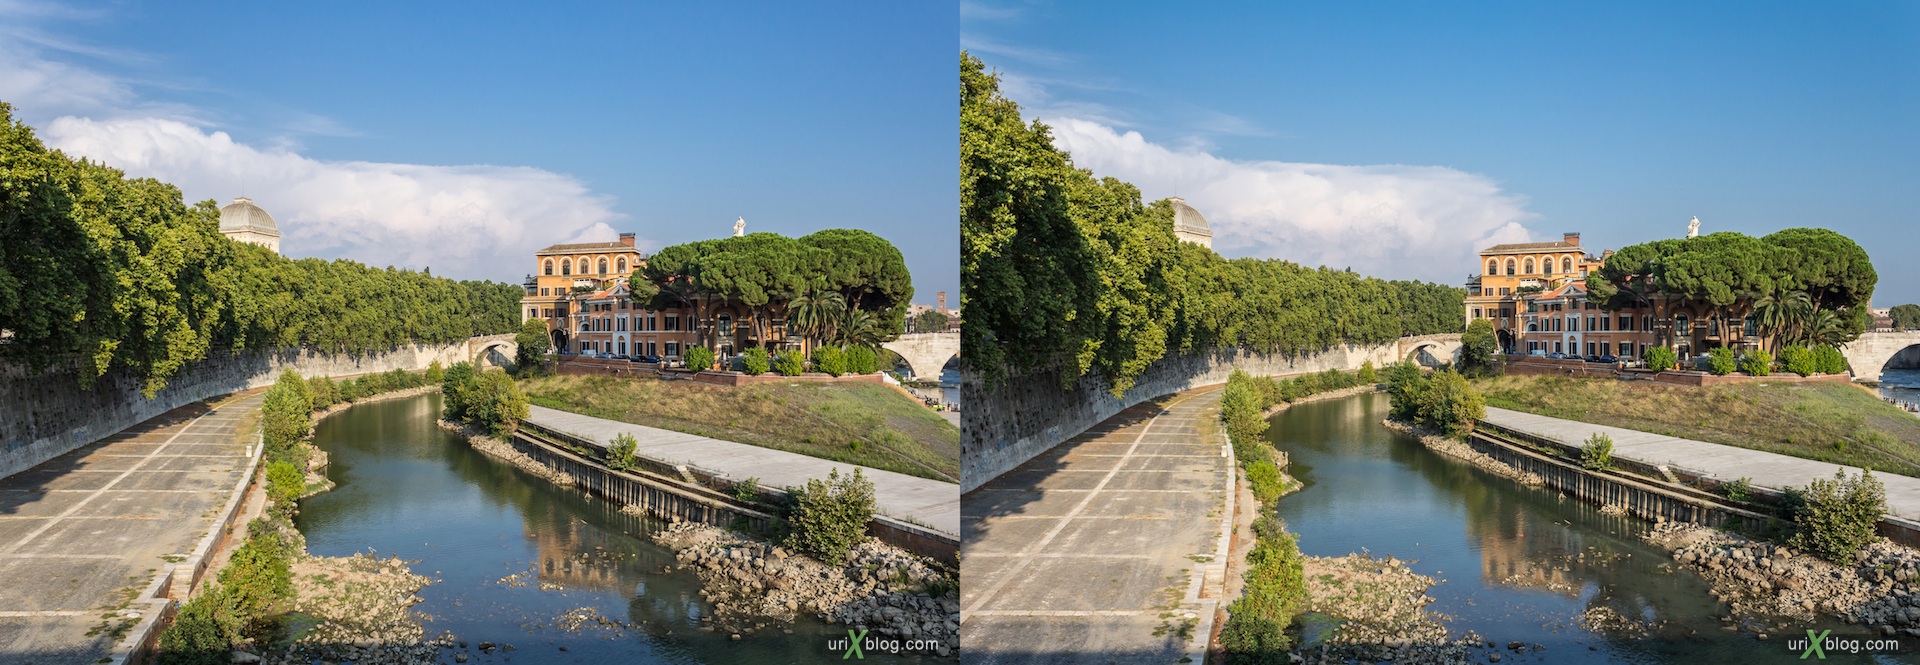 2012, мост Гарибальди, остров Тибр, река Тибр, Рим, Италия, осень, 3D, перекрёстные стереопары, стерео, стереопара, стереопары